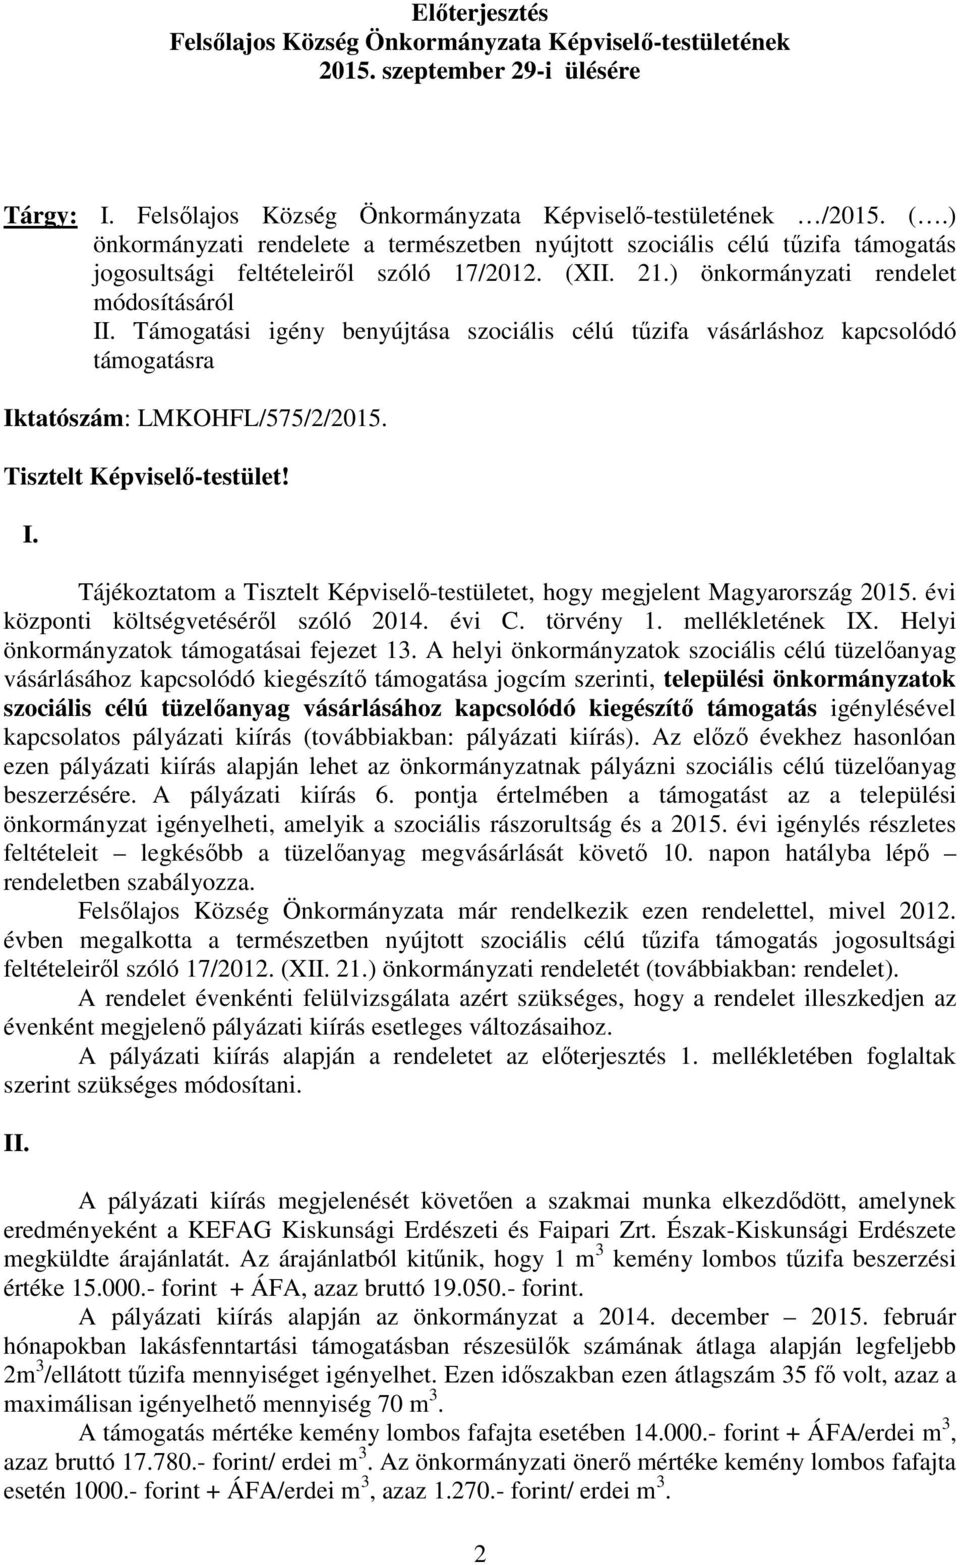 Támogatási igény benyújtása szociális célú tőzifa vásárláshoz kapcsolódó támogatásra Iktatószám: LMKOHFL/575/2/2015. Tisztelt Képviselı-testület! I. Tájékoztatom a Tisztelt Képviselı-testületet, hogy megjelent Magyarország 2015.